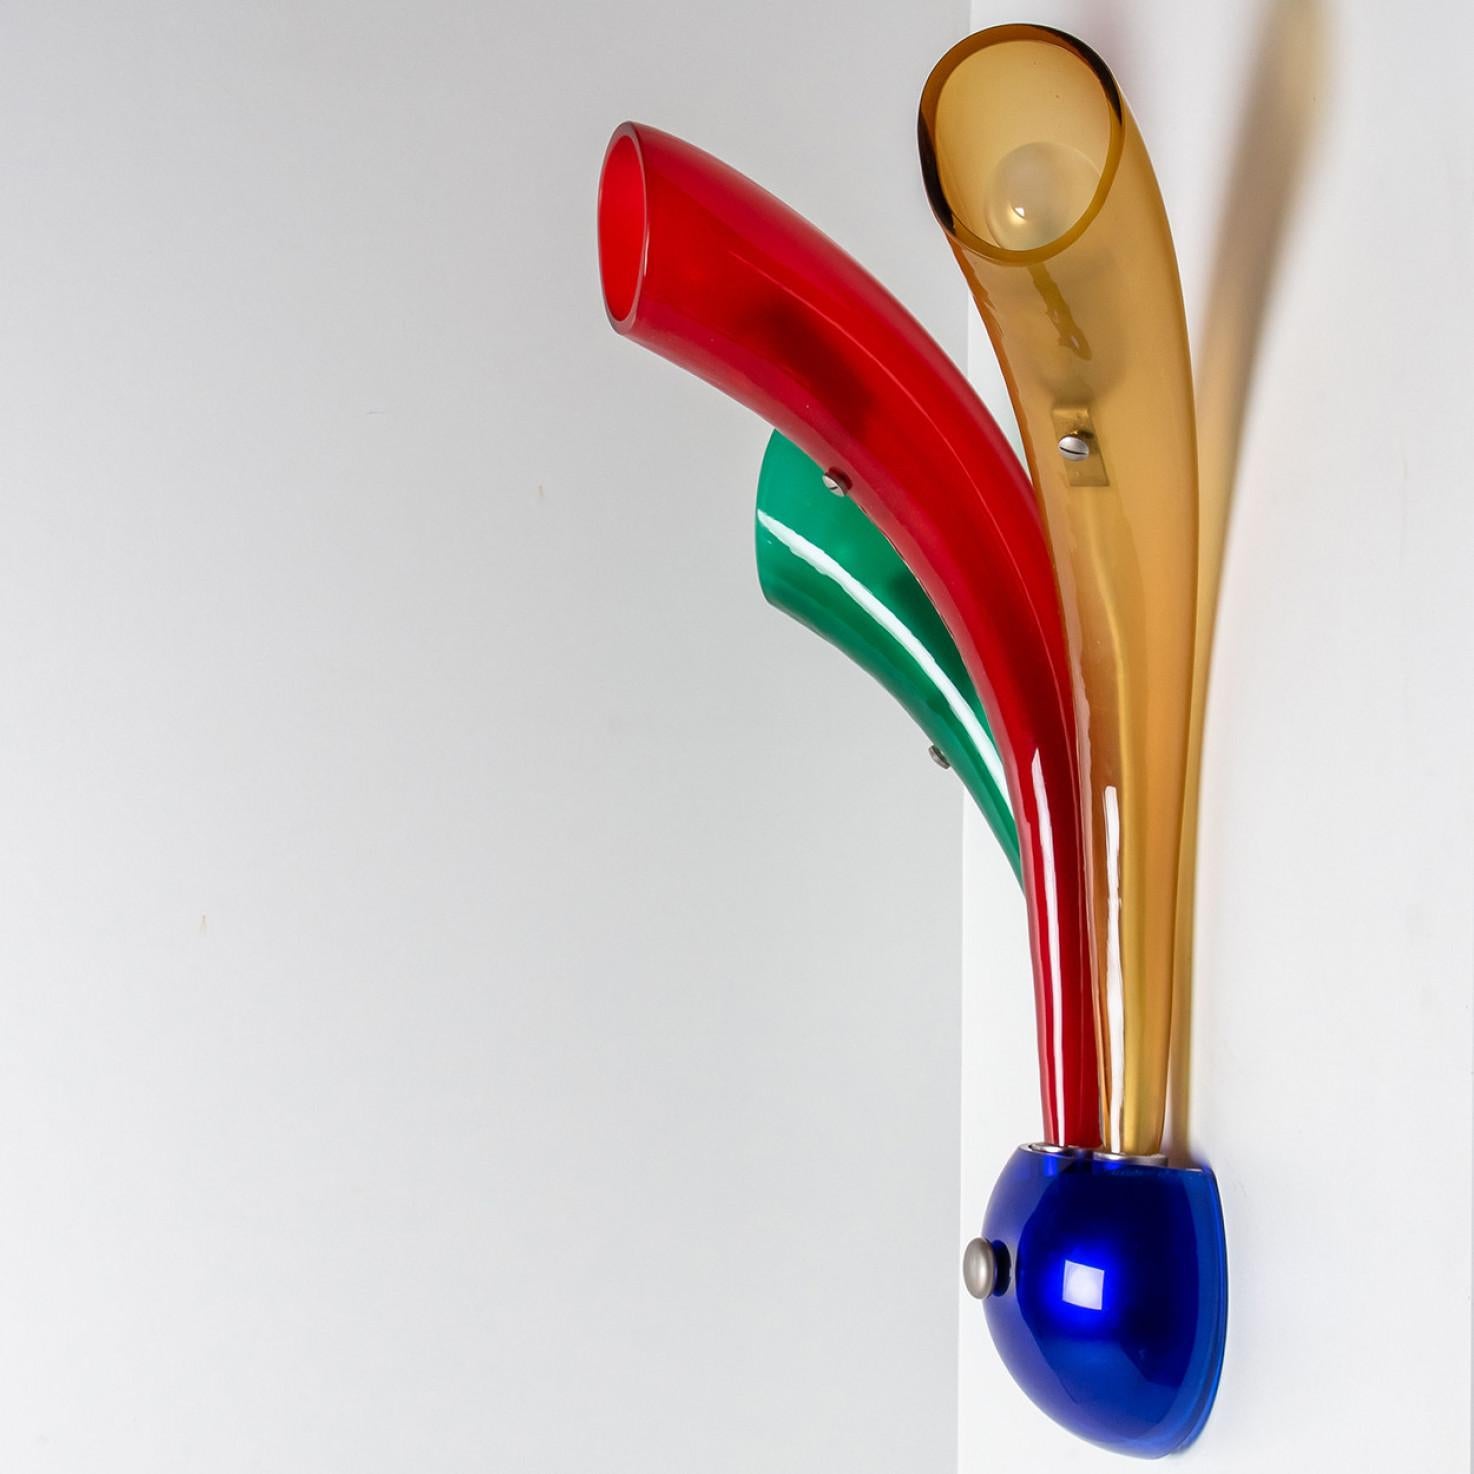 Merveilleux luminaire en verre de Murano multicolore fabriqué à Murano, Italie en 1980.

Avec certificat d'originalité (voir images).

Objet vintage en très bon état. Chaque lampe nécessite 3 ampoules E14 (max 40 Watt chacune).

 

